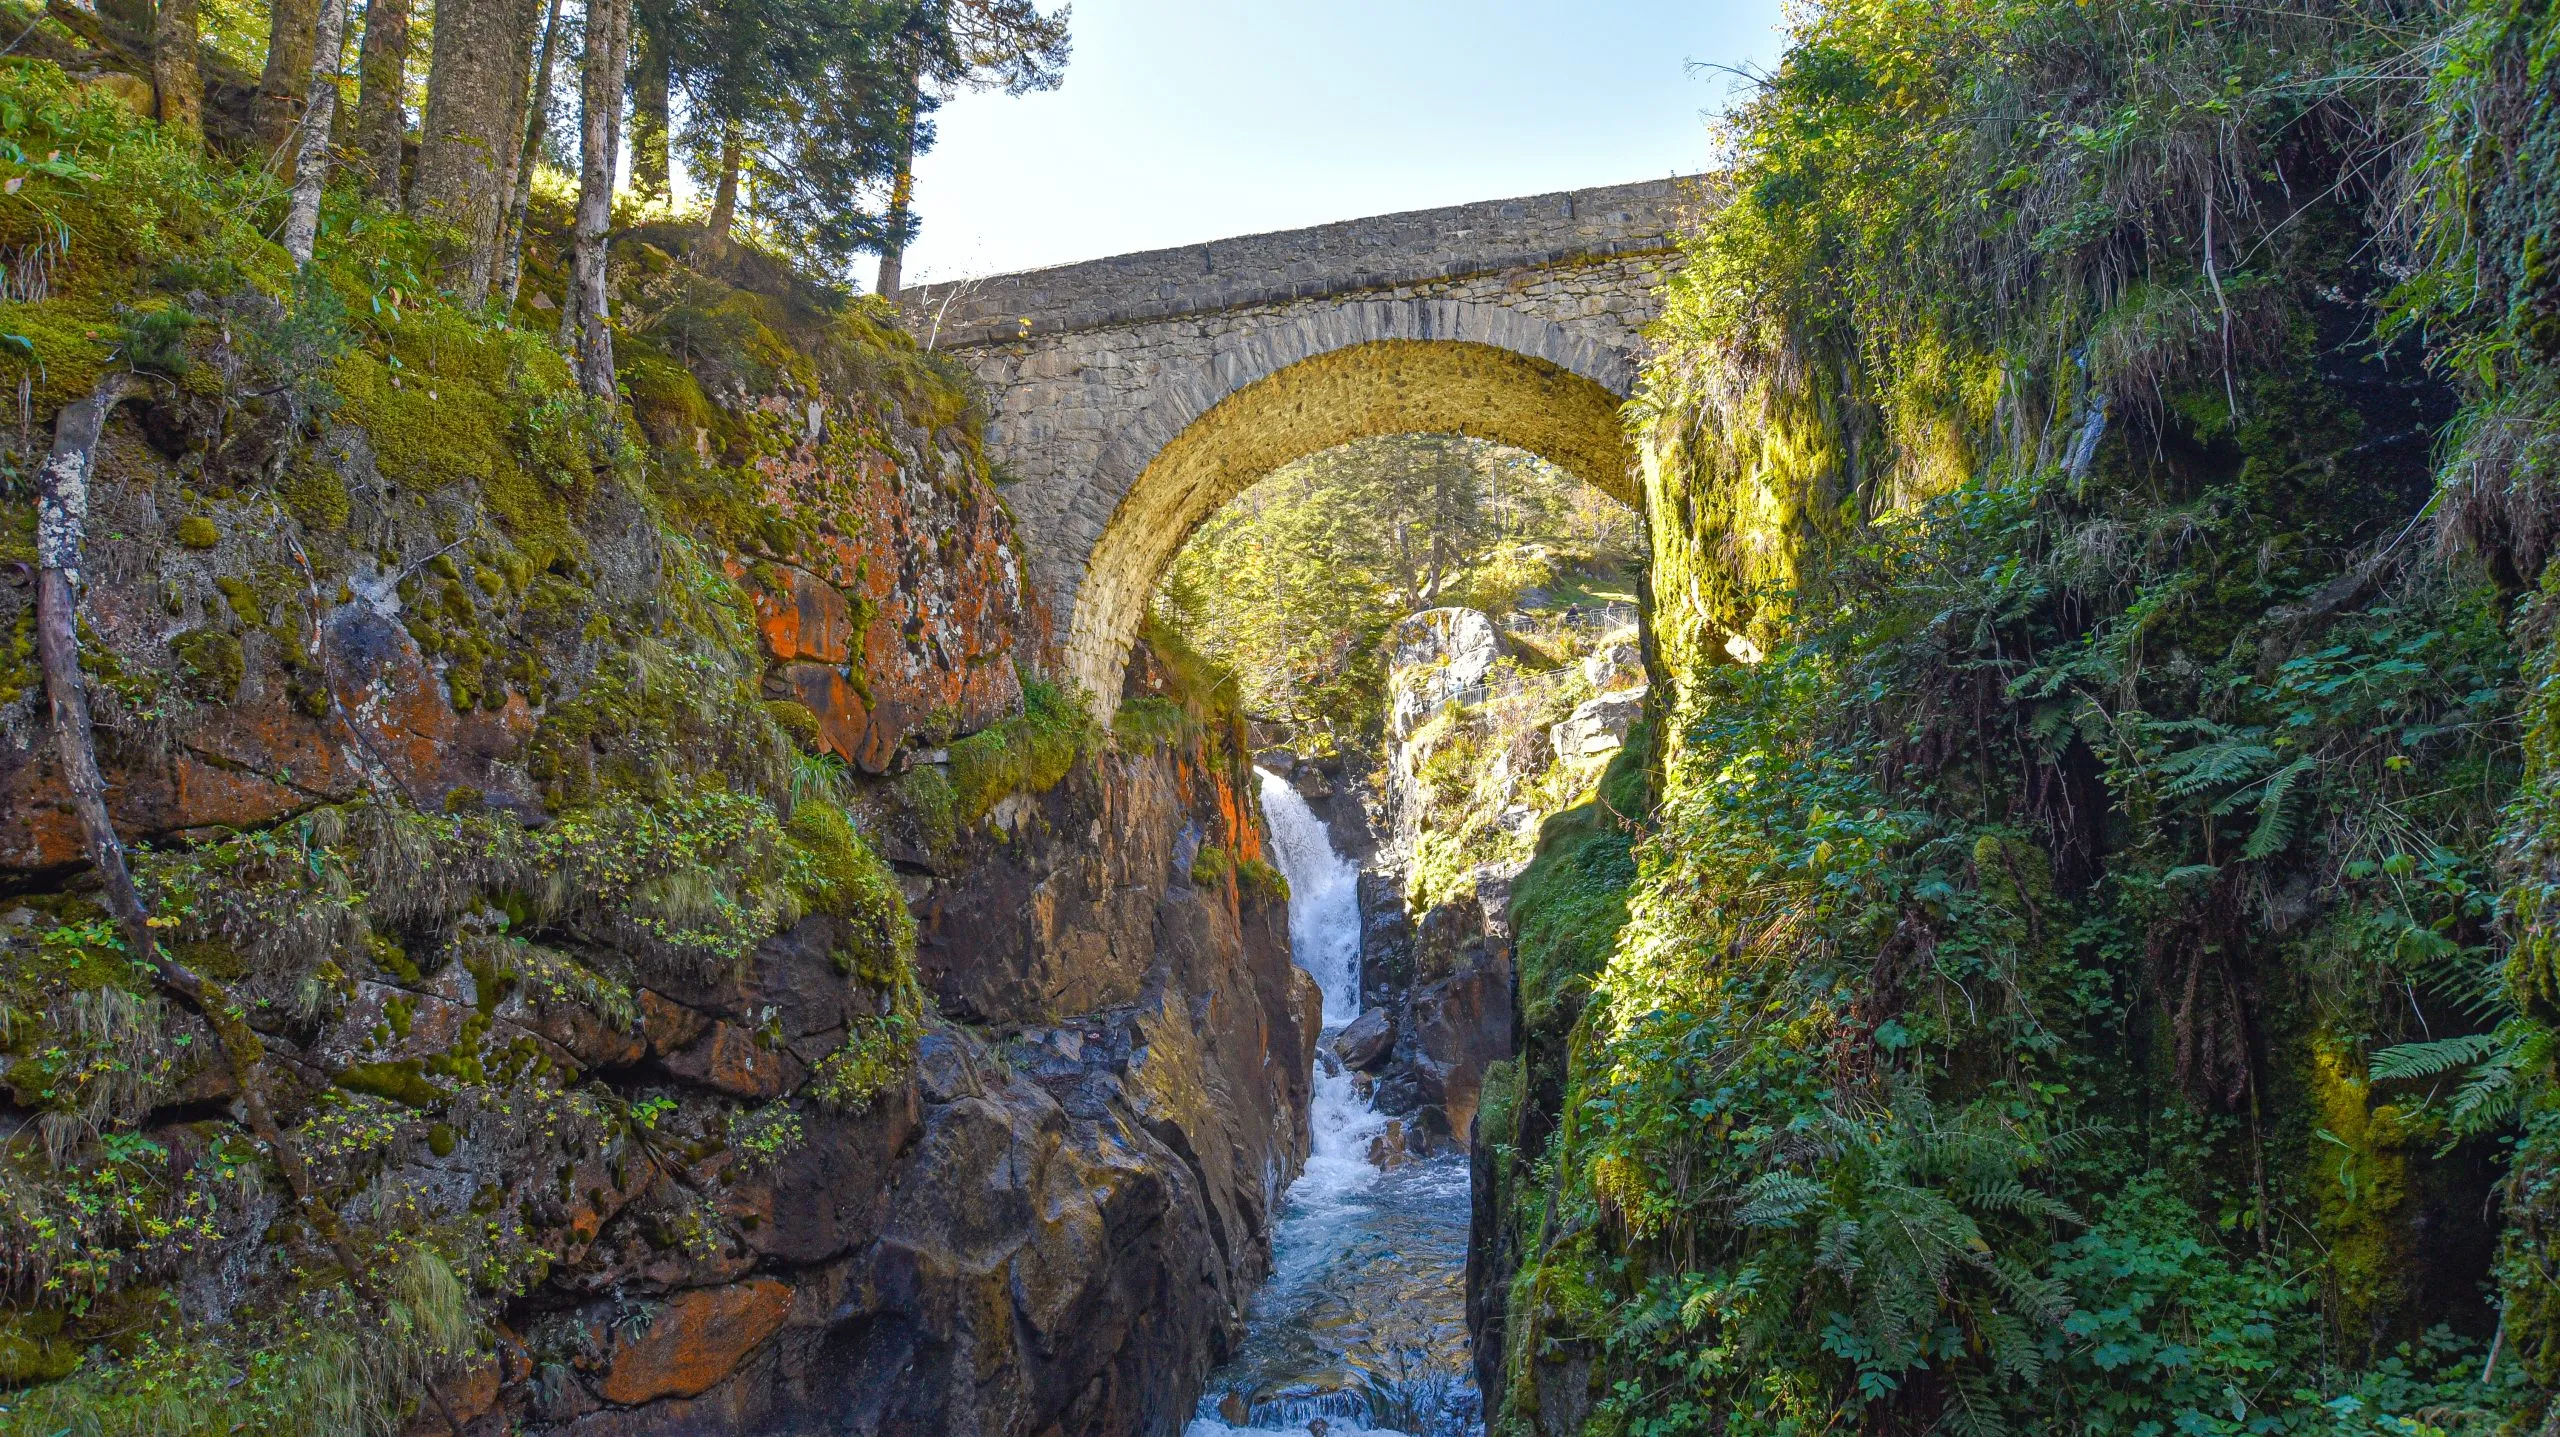 Cauterets, France - 10 octobre 2021 : Le Pont d'Espagne sur le Gave de Marcadau dans le Parc national des Pyrénées